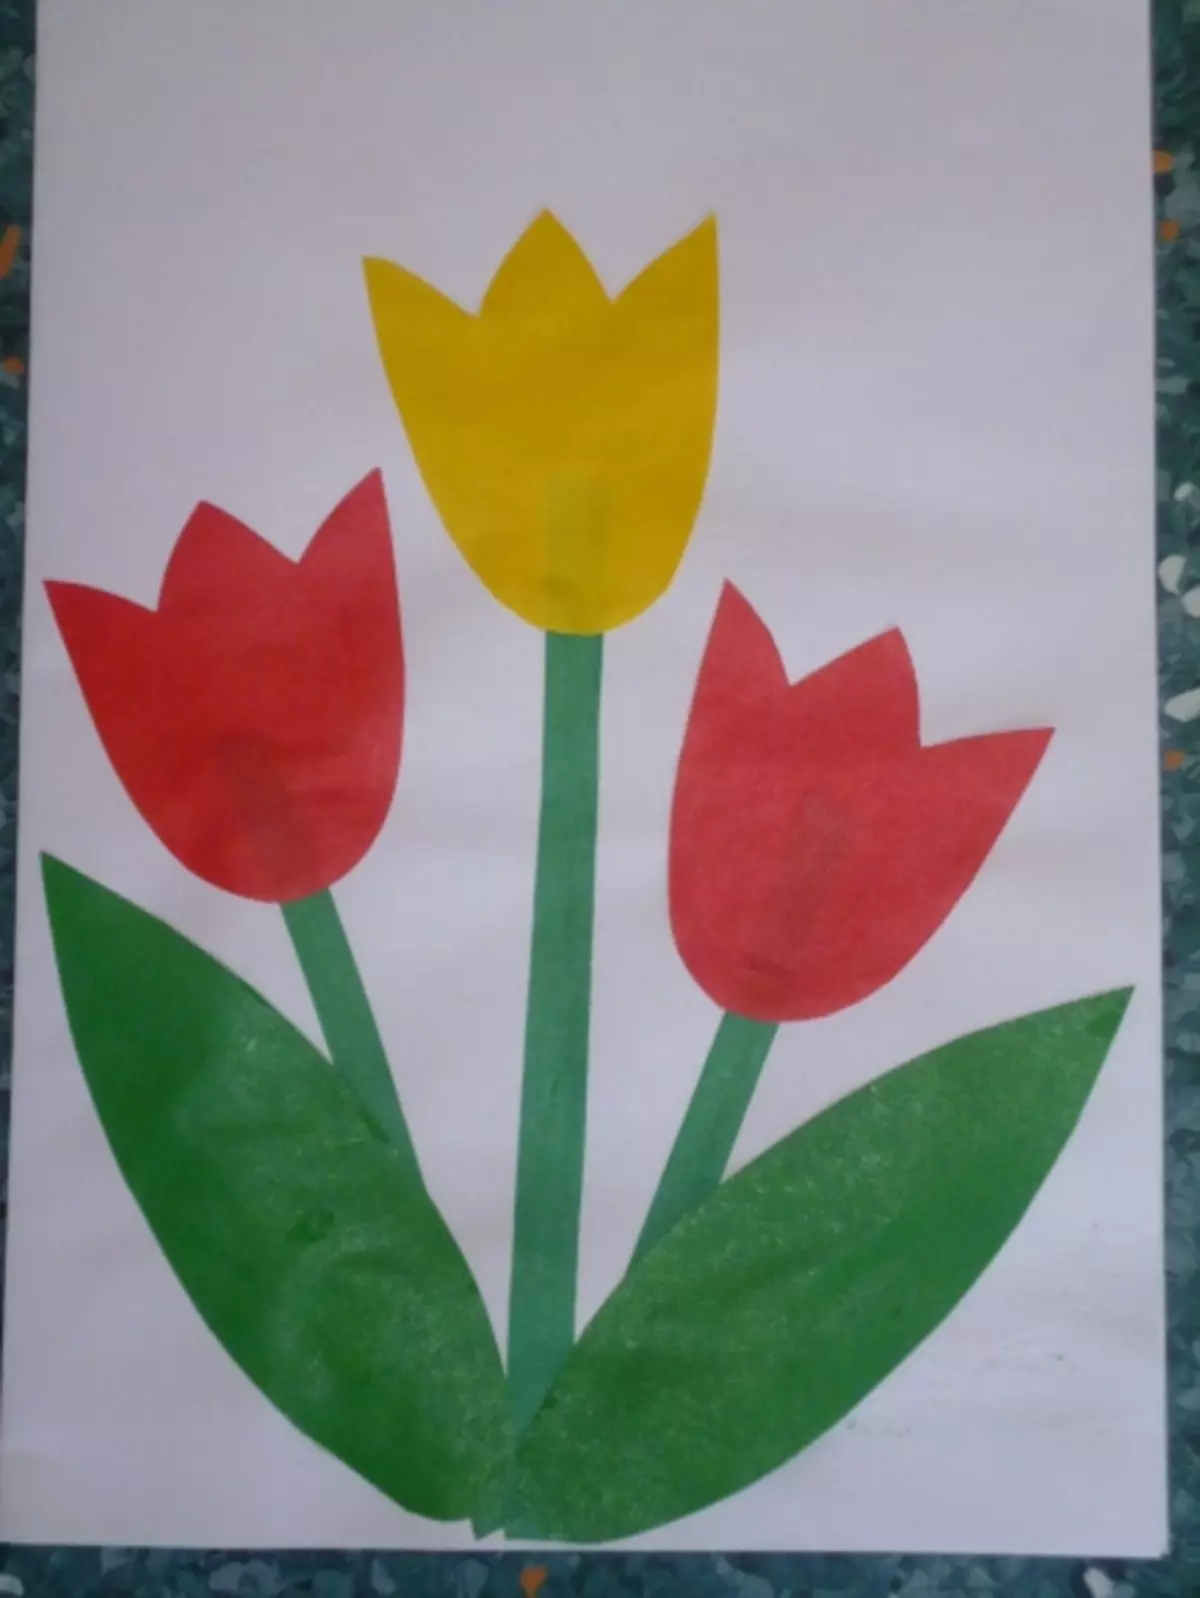 تعلیم کے دن کے لئے اپلی کیشن (15 فوٹو): اپنے ہاتھوں سے کاغذ سے پھول بنانے کے لئے کس طرح؟ ایک پوسٹ کارڈ کی شکل اور قدرتی مواد کی تصویر میں درخواست 26358_7